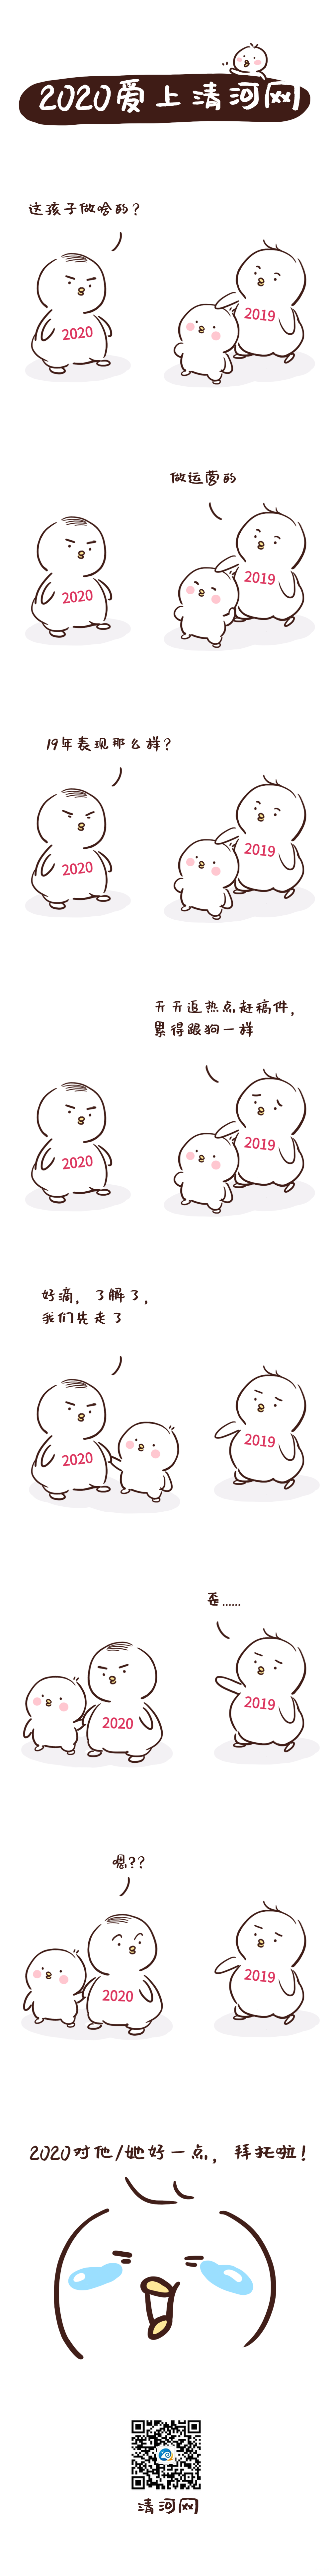 2020跨年元旦春节条漫长图